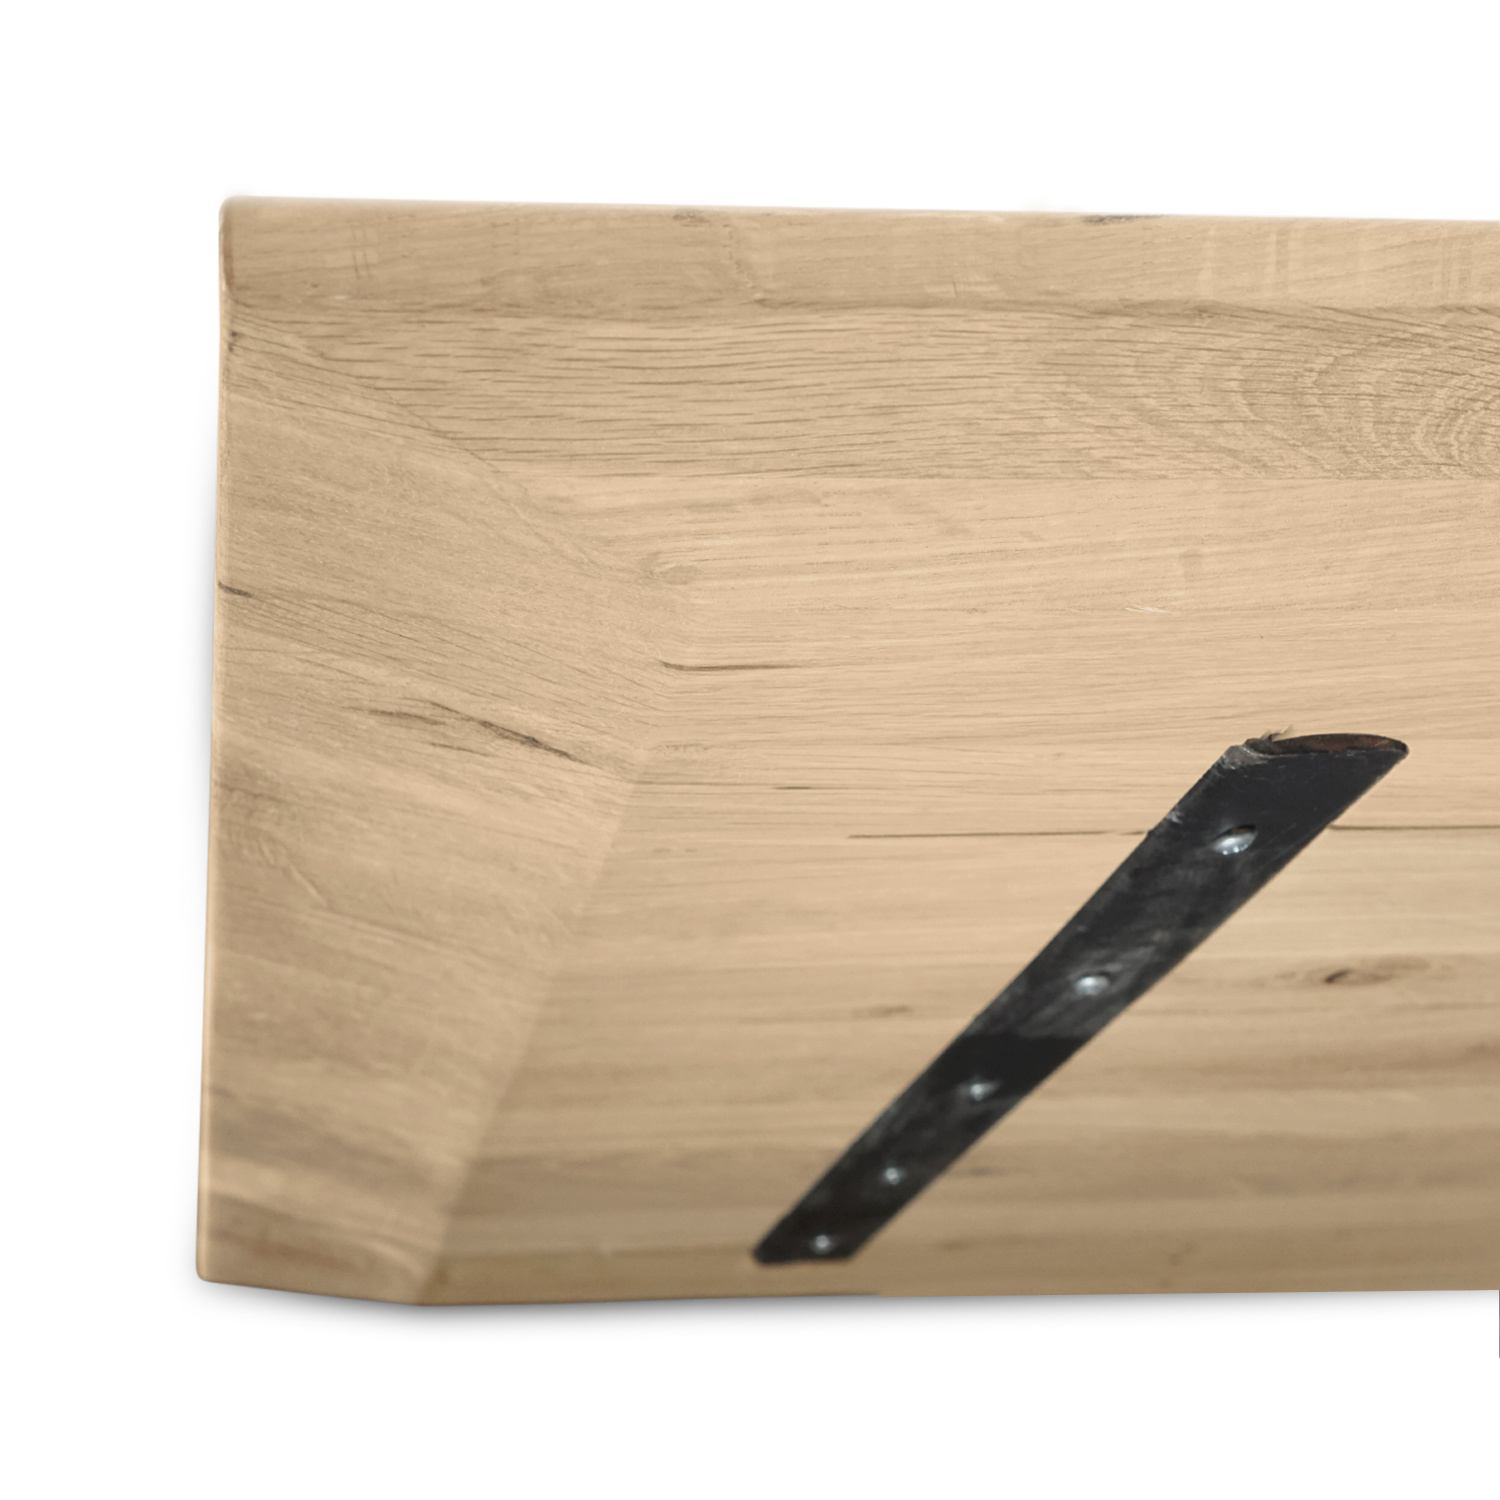  Tischplatte Eiche - Schweizer Kante - 4 cm dick (1-Schicht) - Breite Lamellen (10 - 12 cm breit) - Eichenholz rustikal - verleimt & künstlich getrocknet (HF 8-12%) - verschiedene Größen